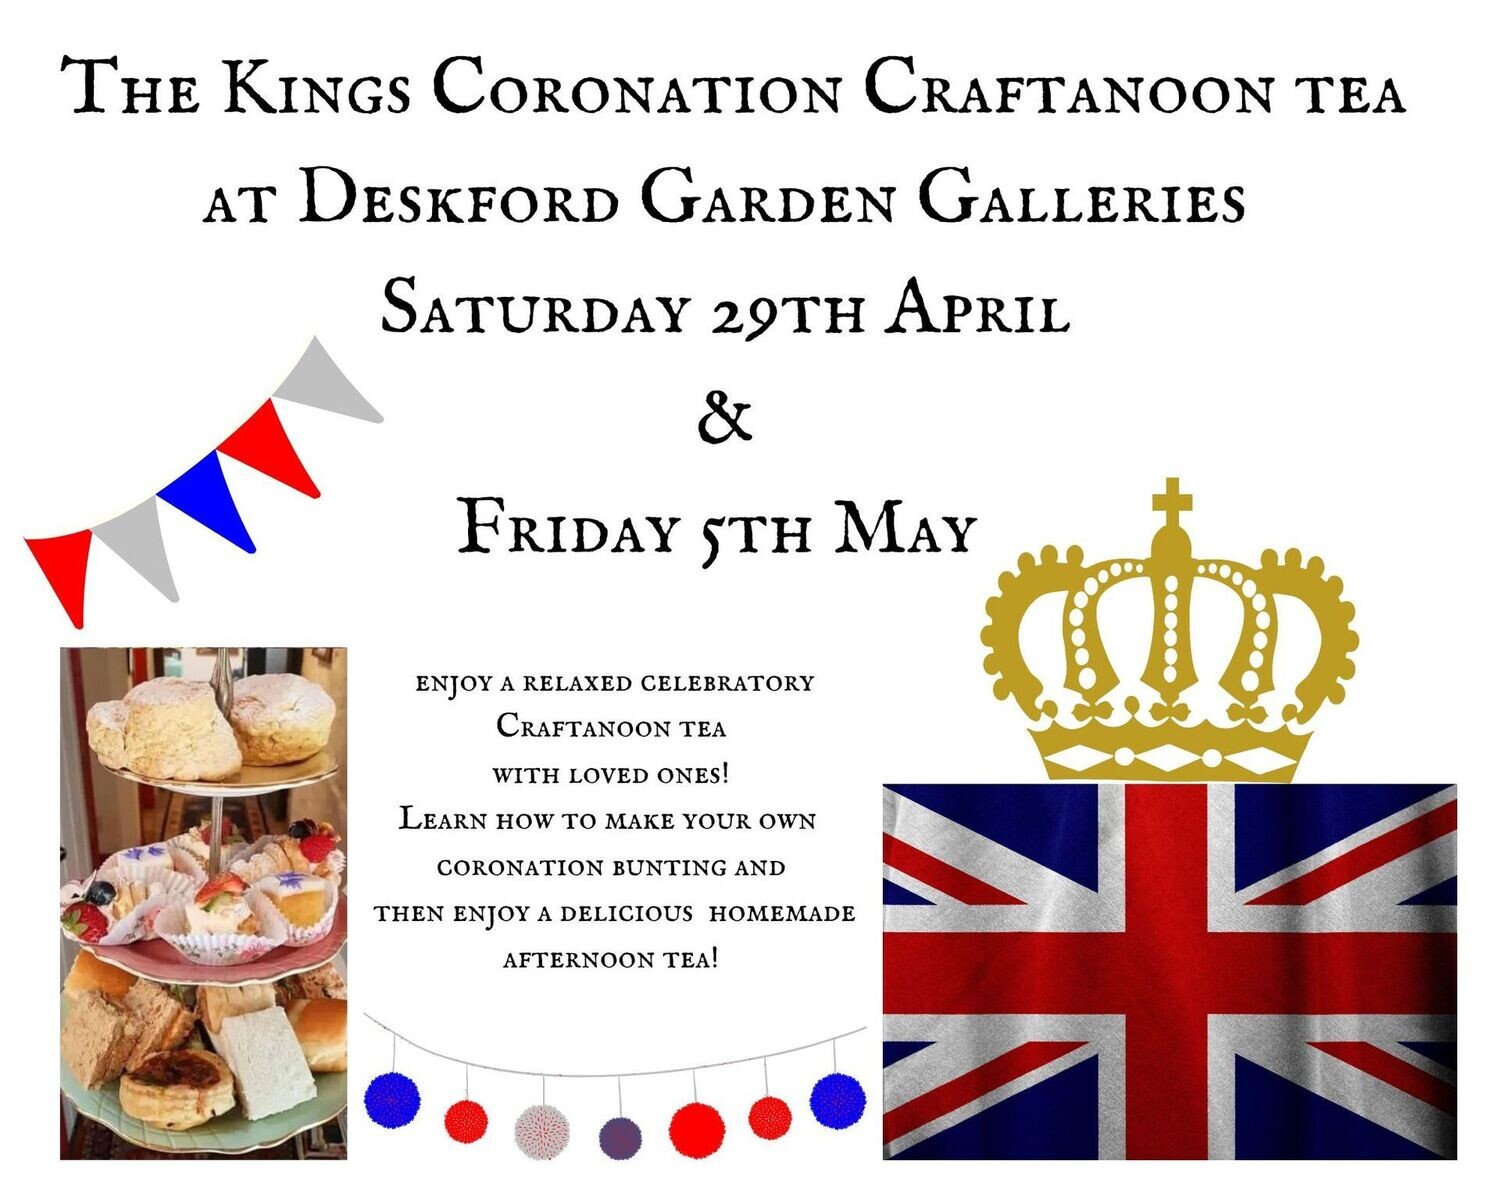 The Kings Coronation Craftanoon tea at Deskford Garden Galleries